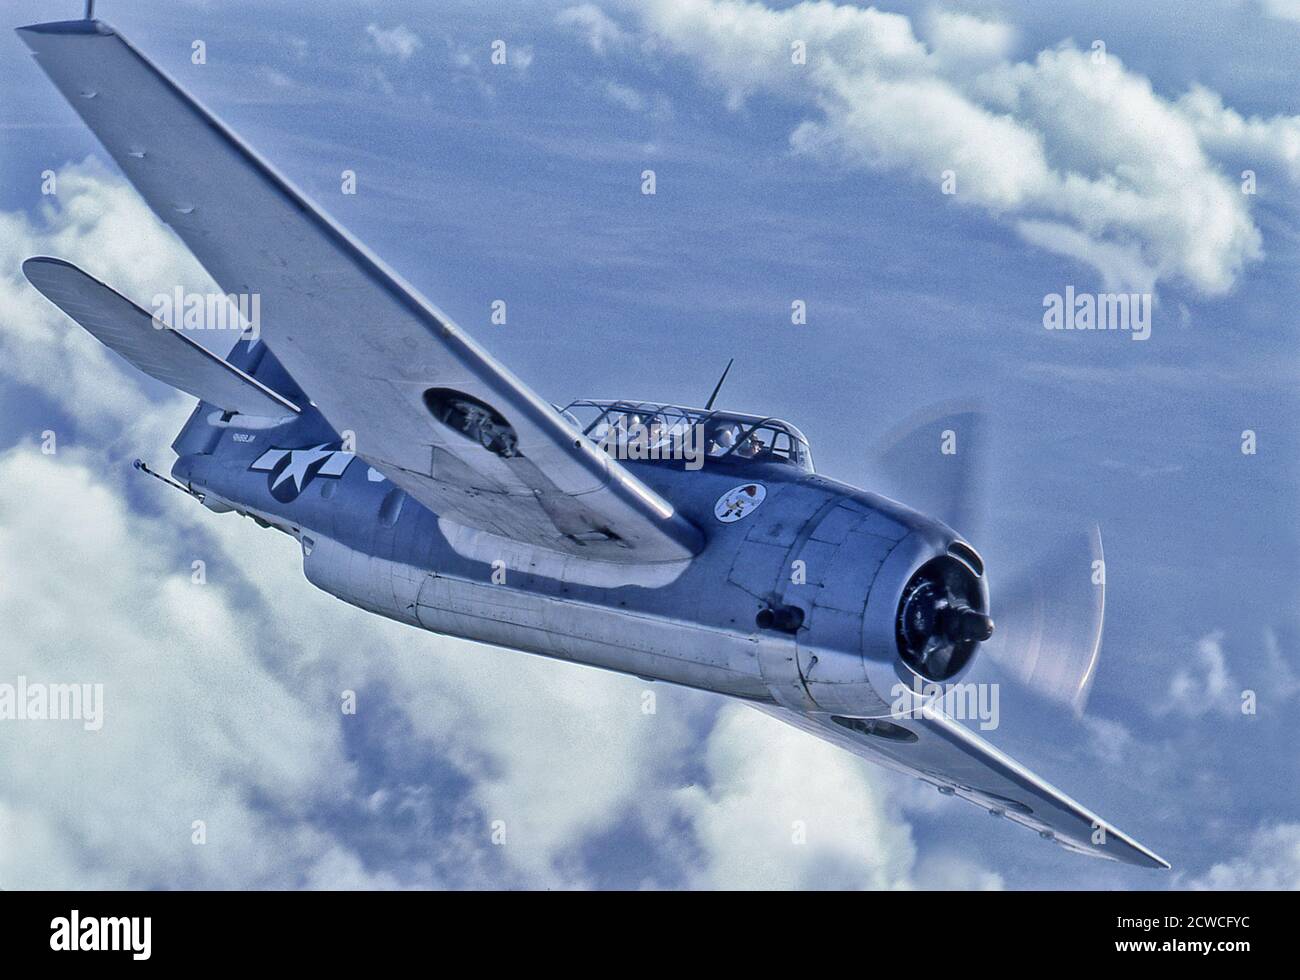 WWII Grumman TBM Avenger Torpedo Bomber Stockfotografie - Alamy